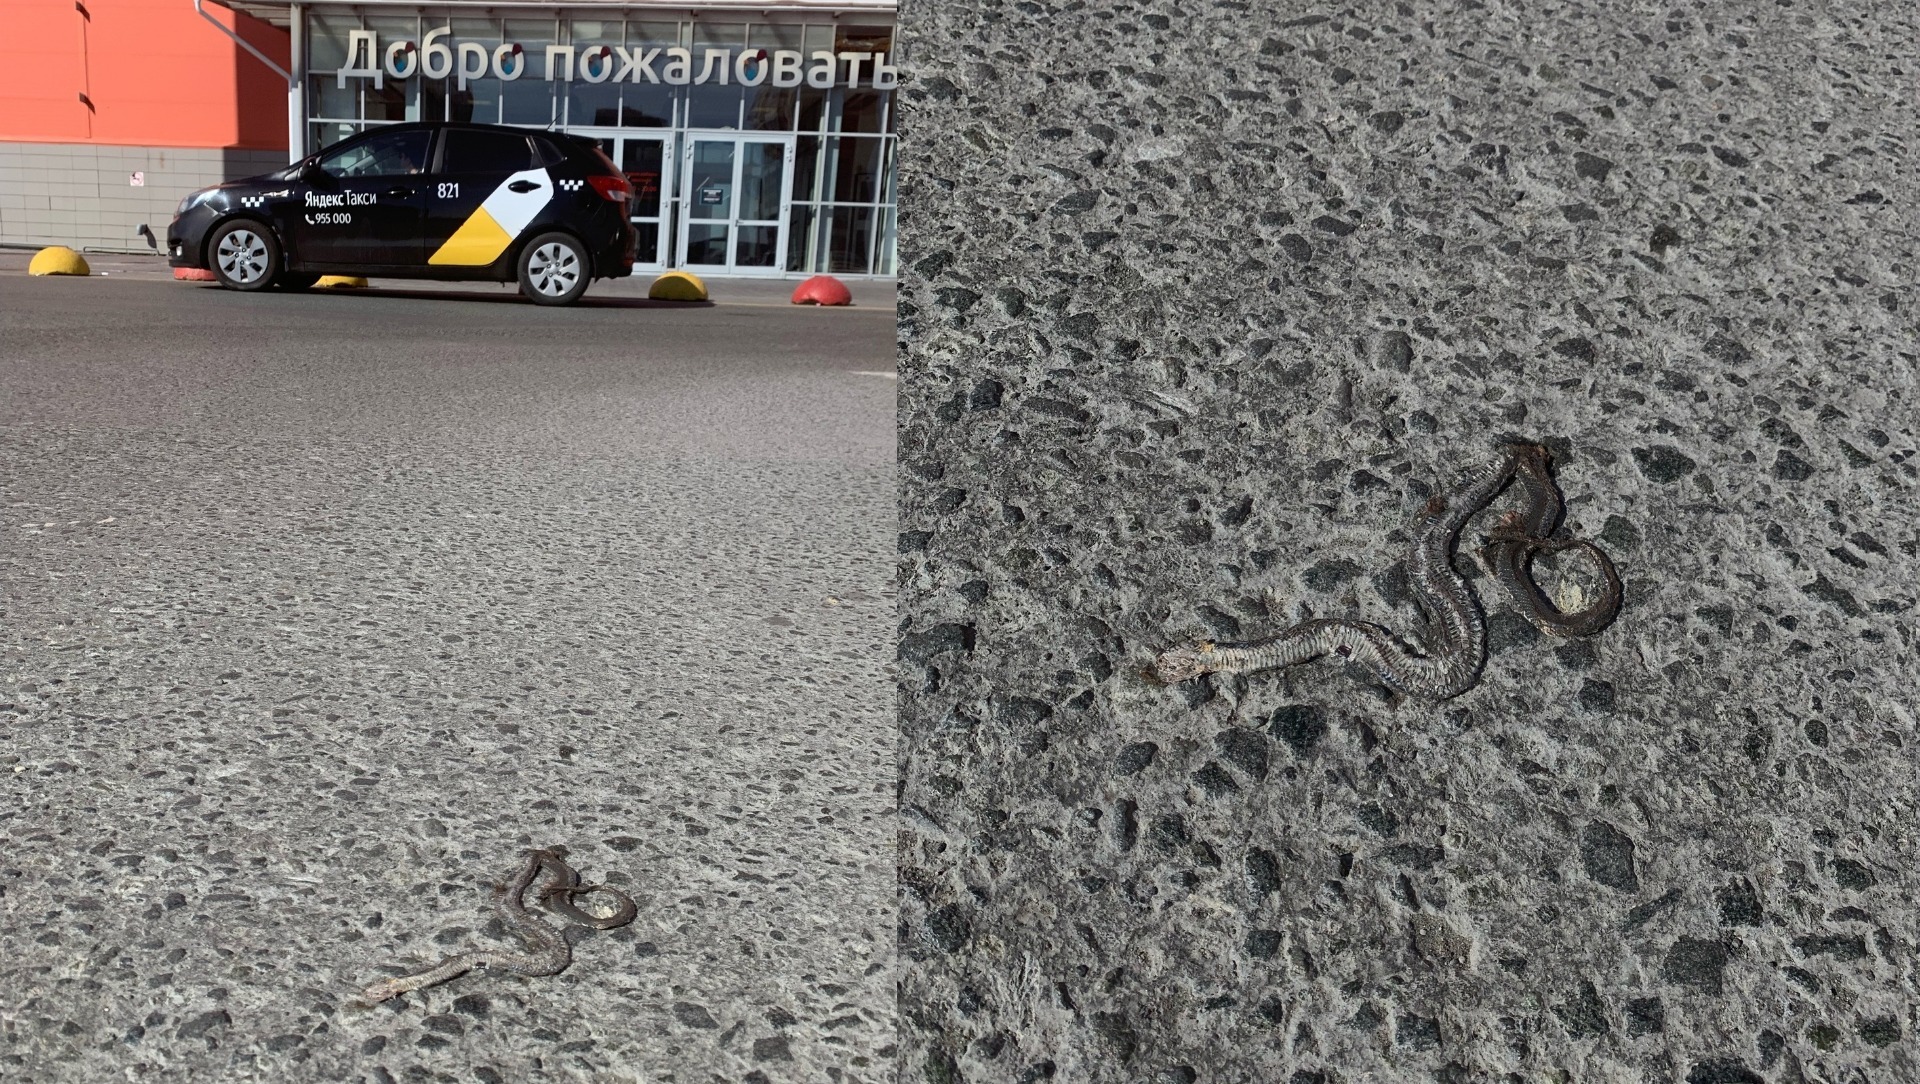 Раздавленная змея лежала на дороге у ТЦ «Ашан» в Тюмени. Фото